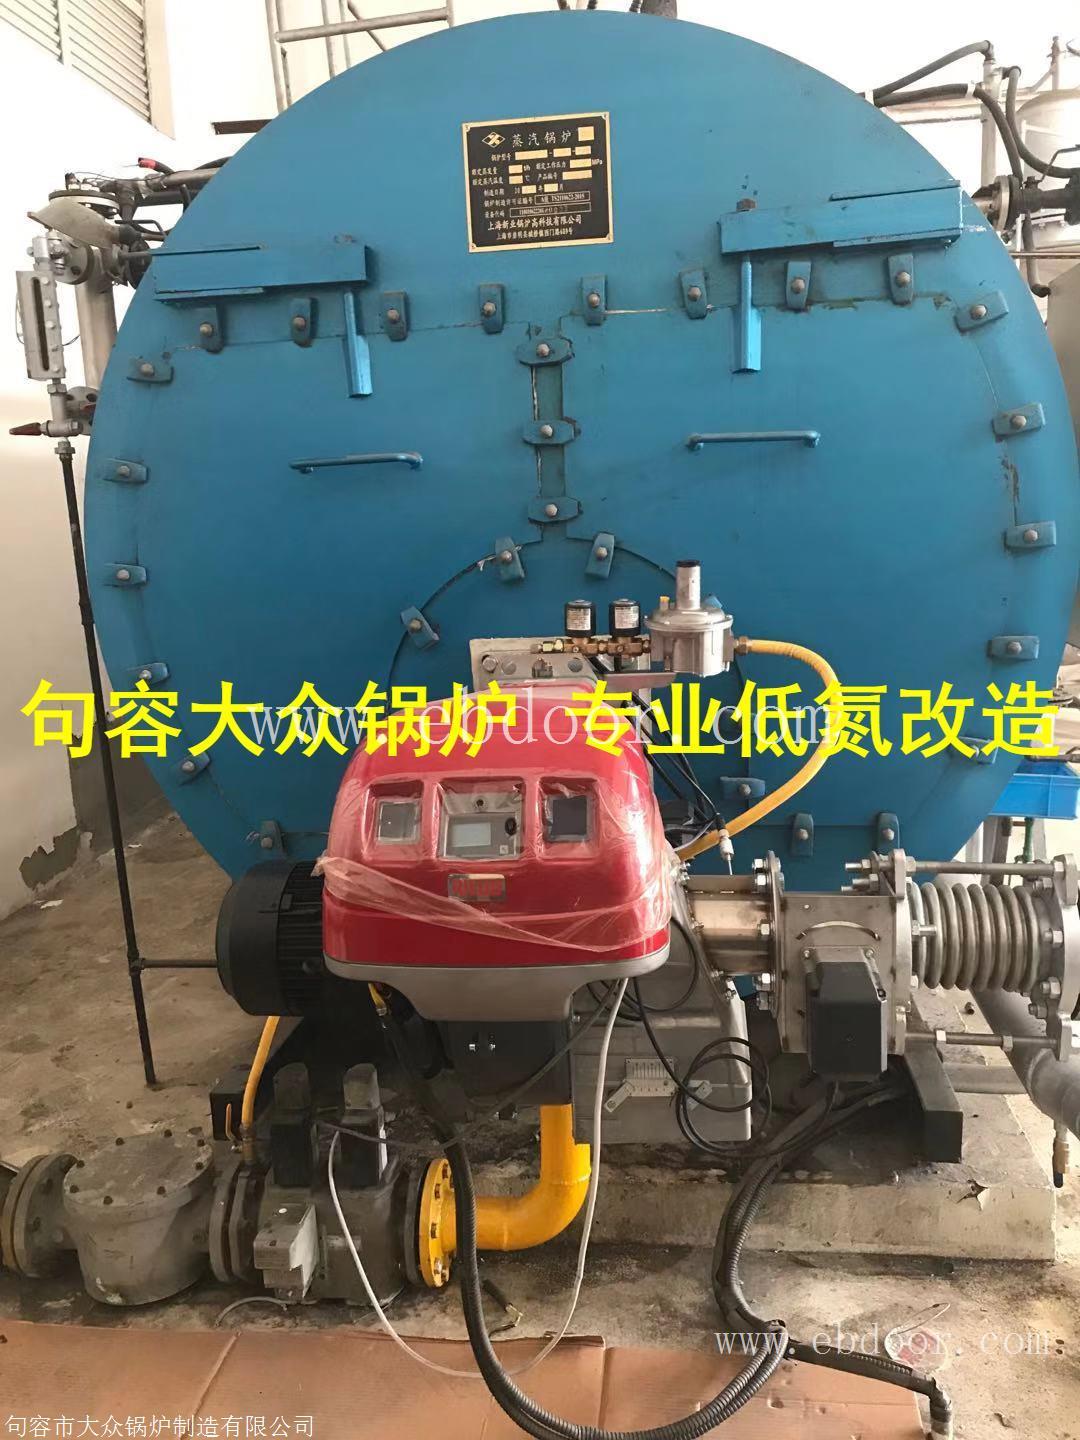 燃气锅炉怎样降低氮氧化物的排放江苏镇江锅炉厂家烟气内循环技术